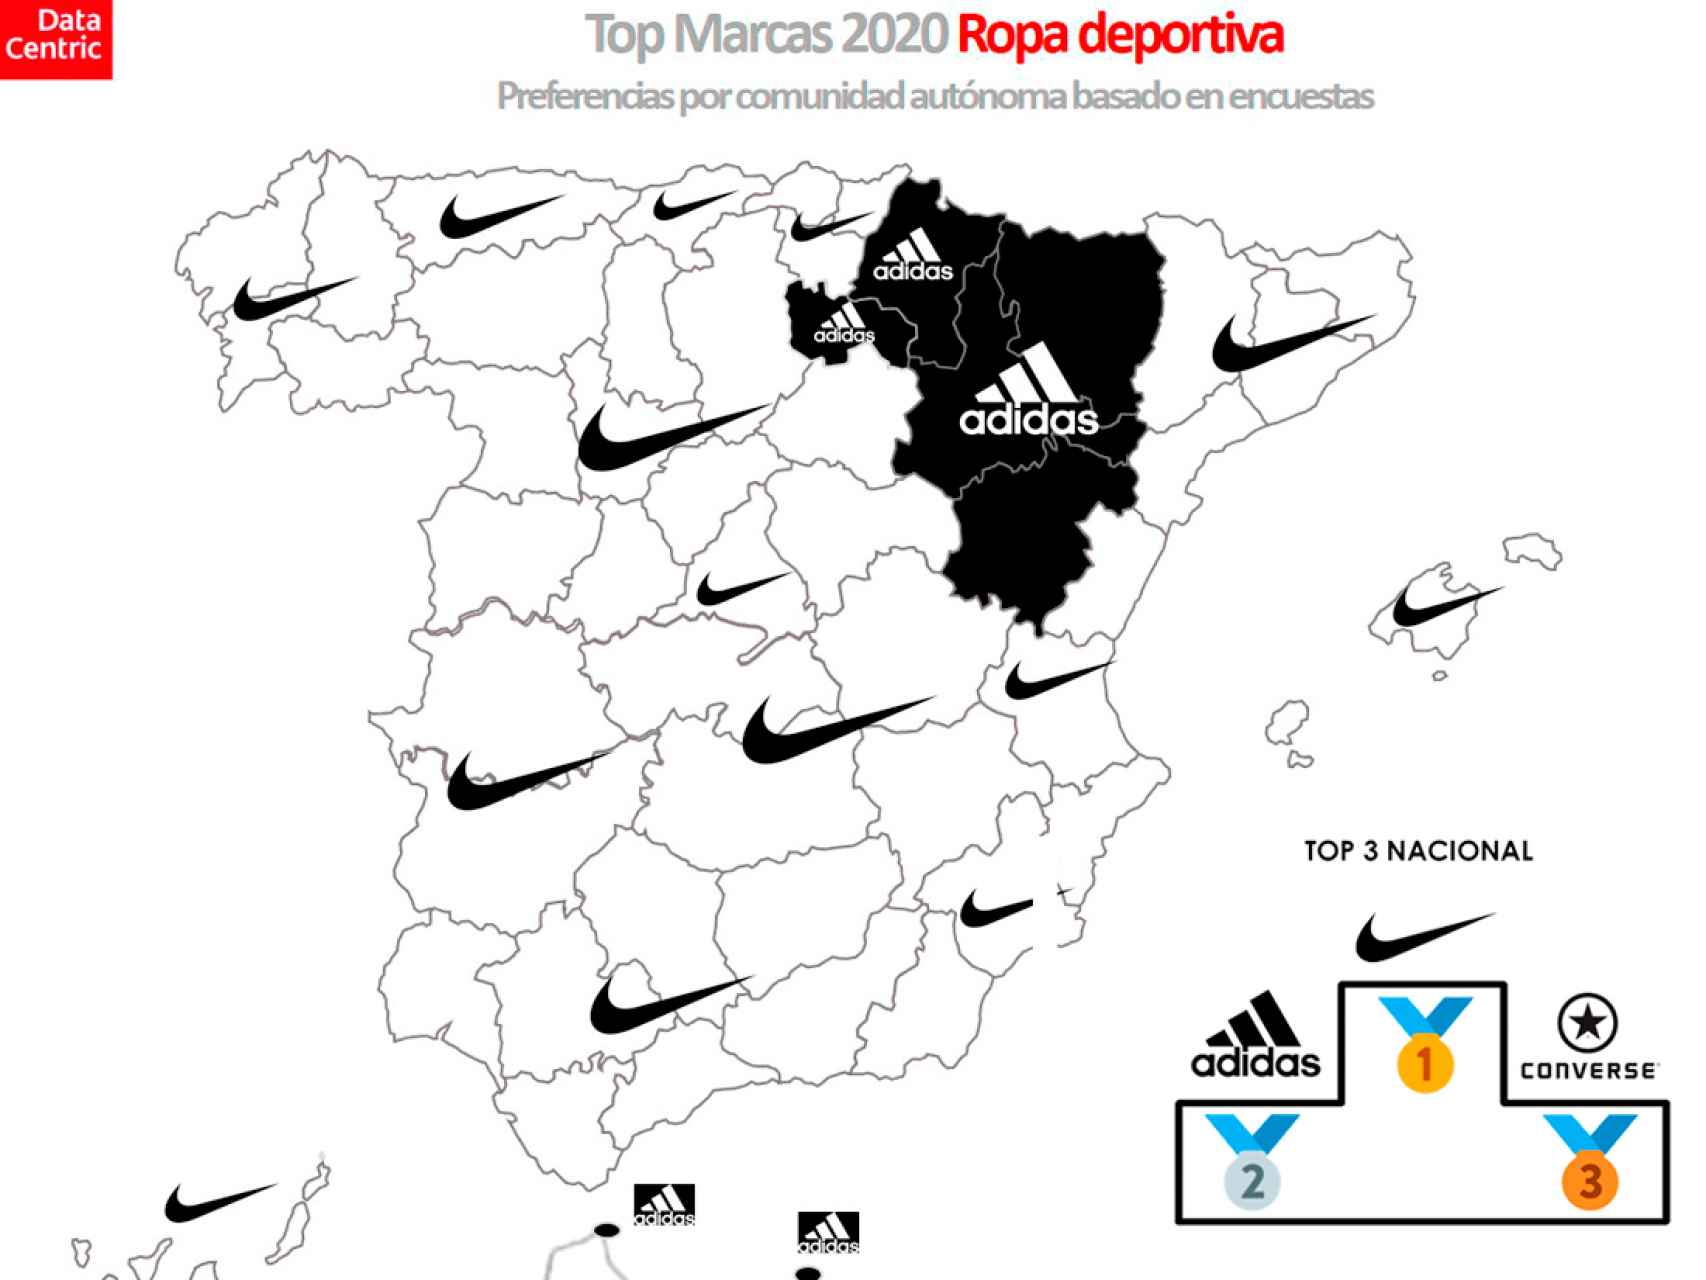 El mapa de las marcas favoritas de ropa deportiva en España en 2020.